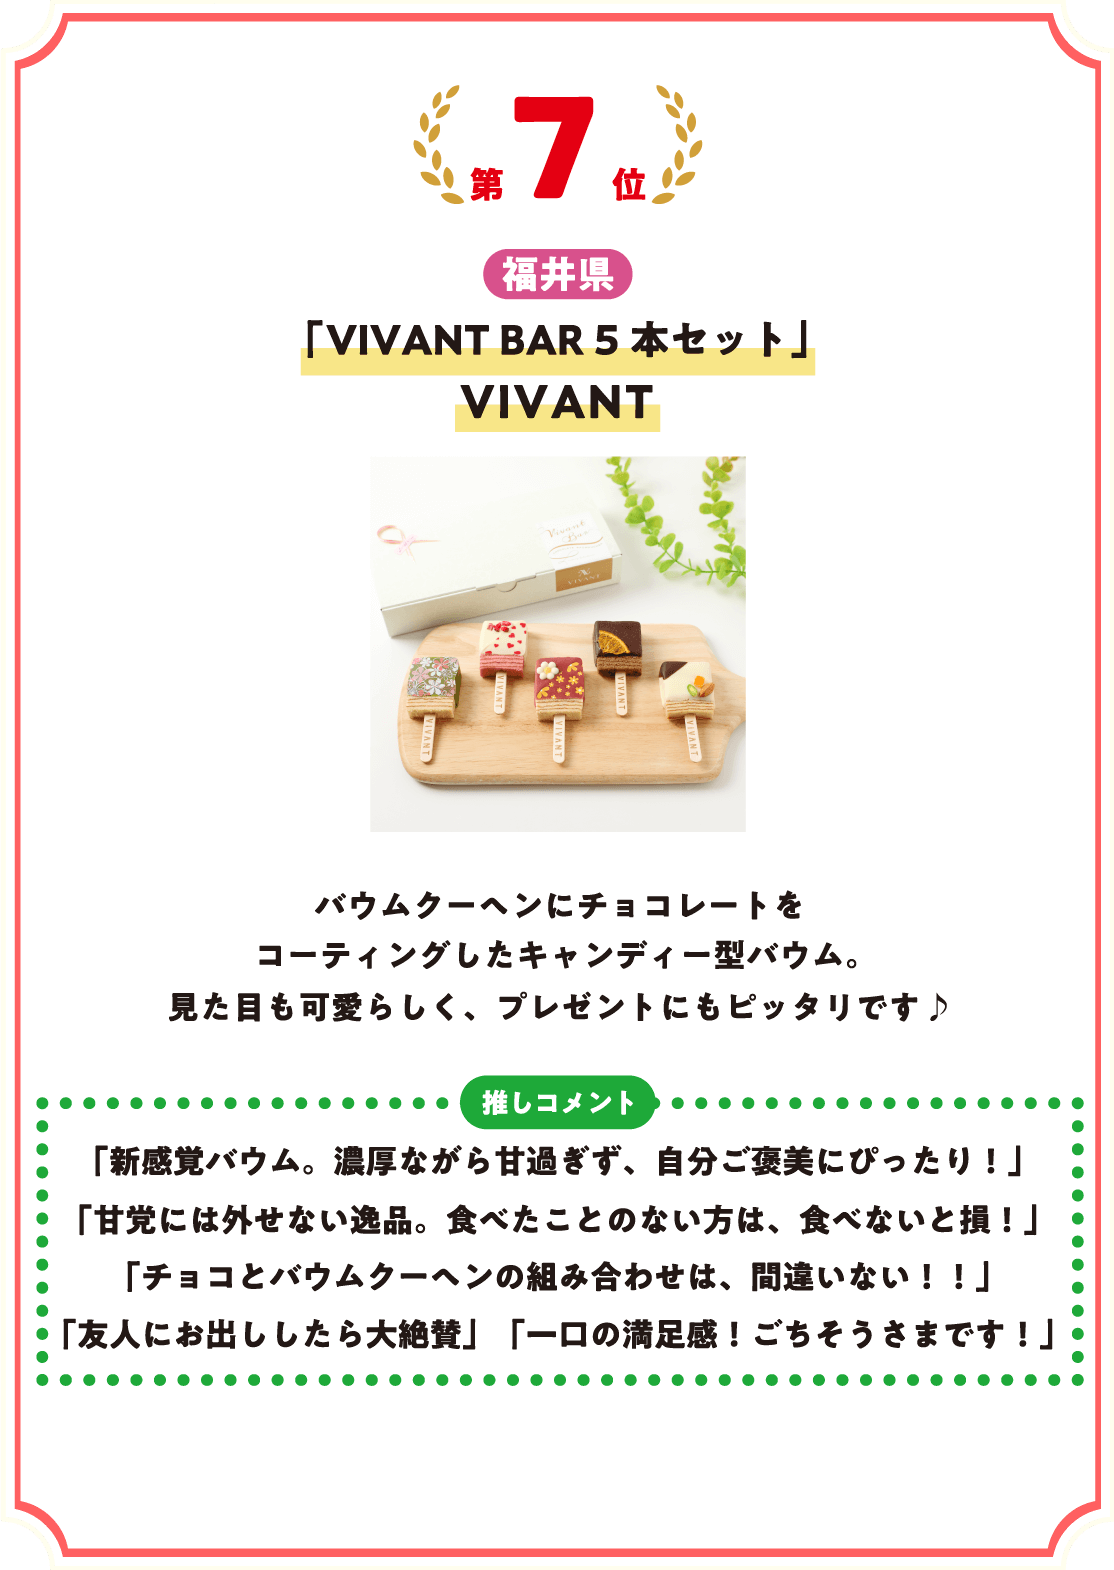 第7位 福井県 VIVANT BAR 5本セット VIVANT